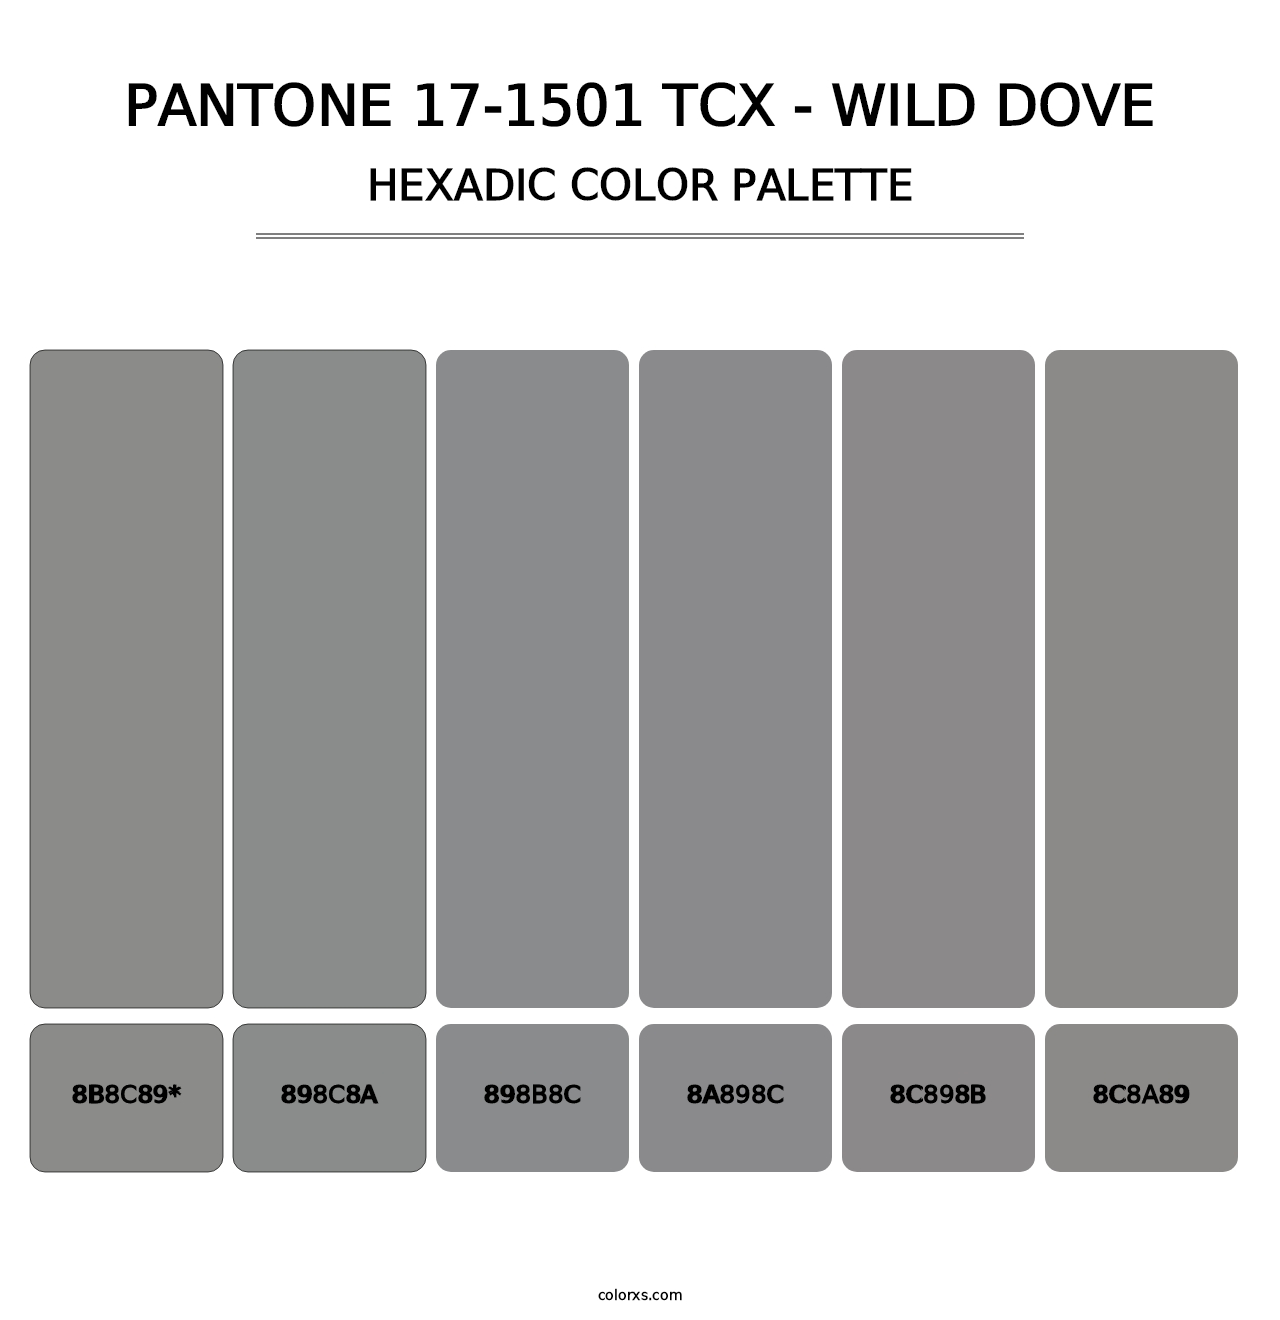 PANTONE 17-1501 TCX - Wild Dove - Hexadic Color Palette